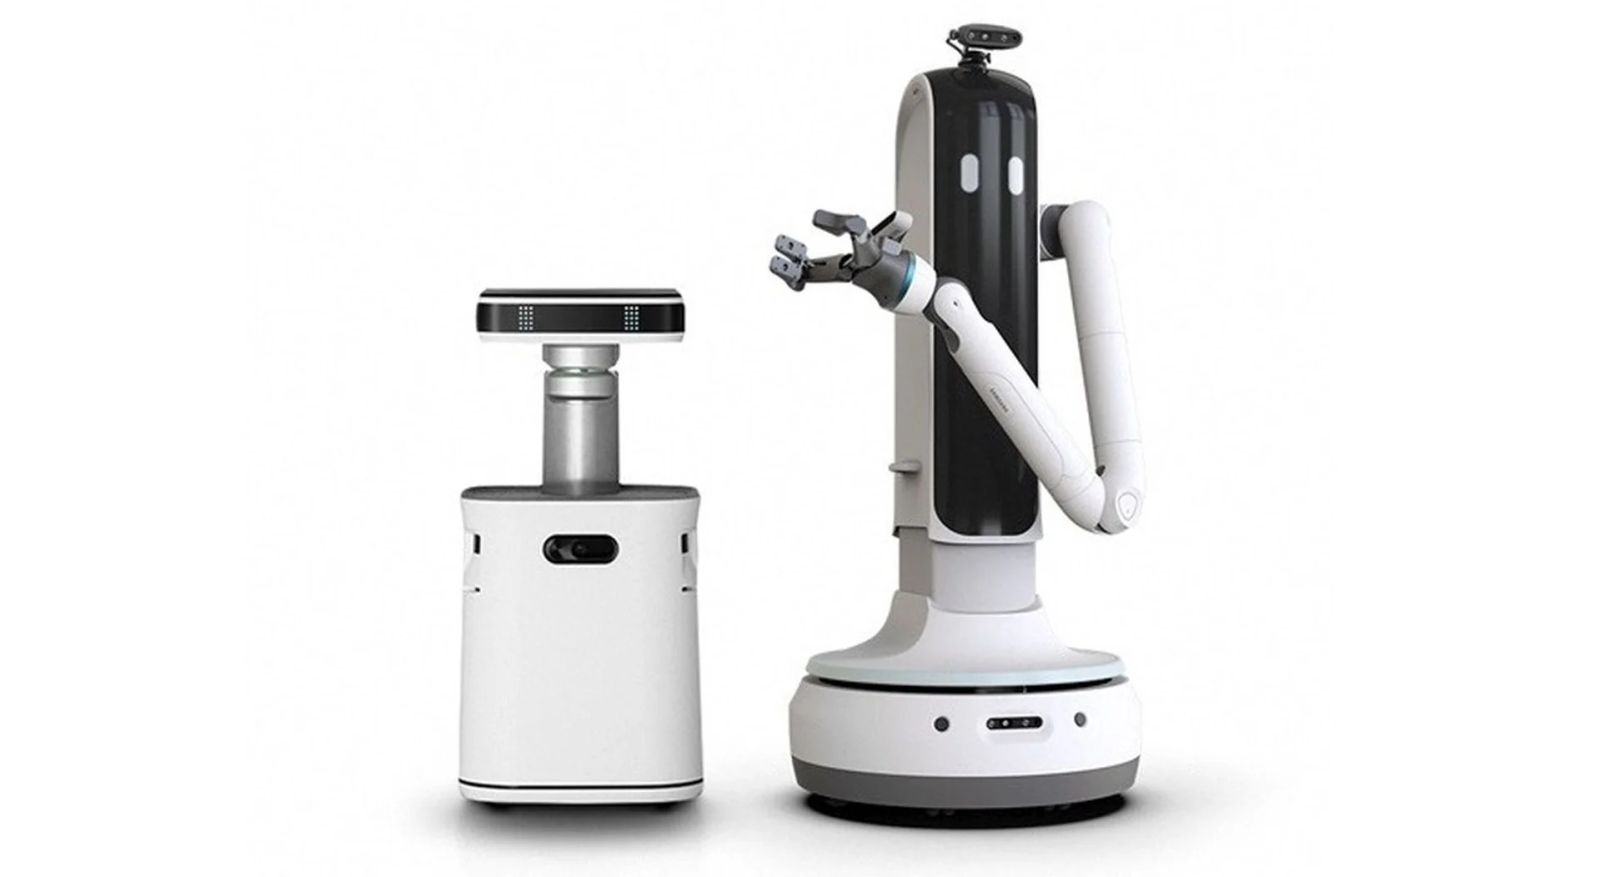 روبوت Bot Hany (إلى اليمين) - روبوت Bot Care (إلى اليسار) - سامسونج